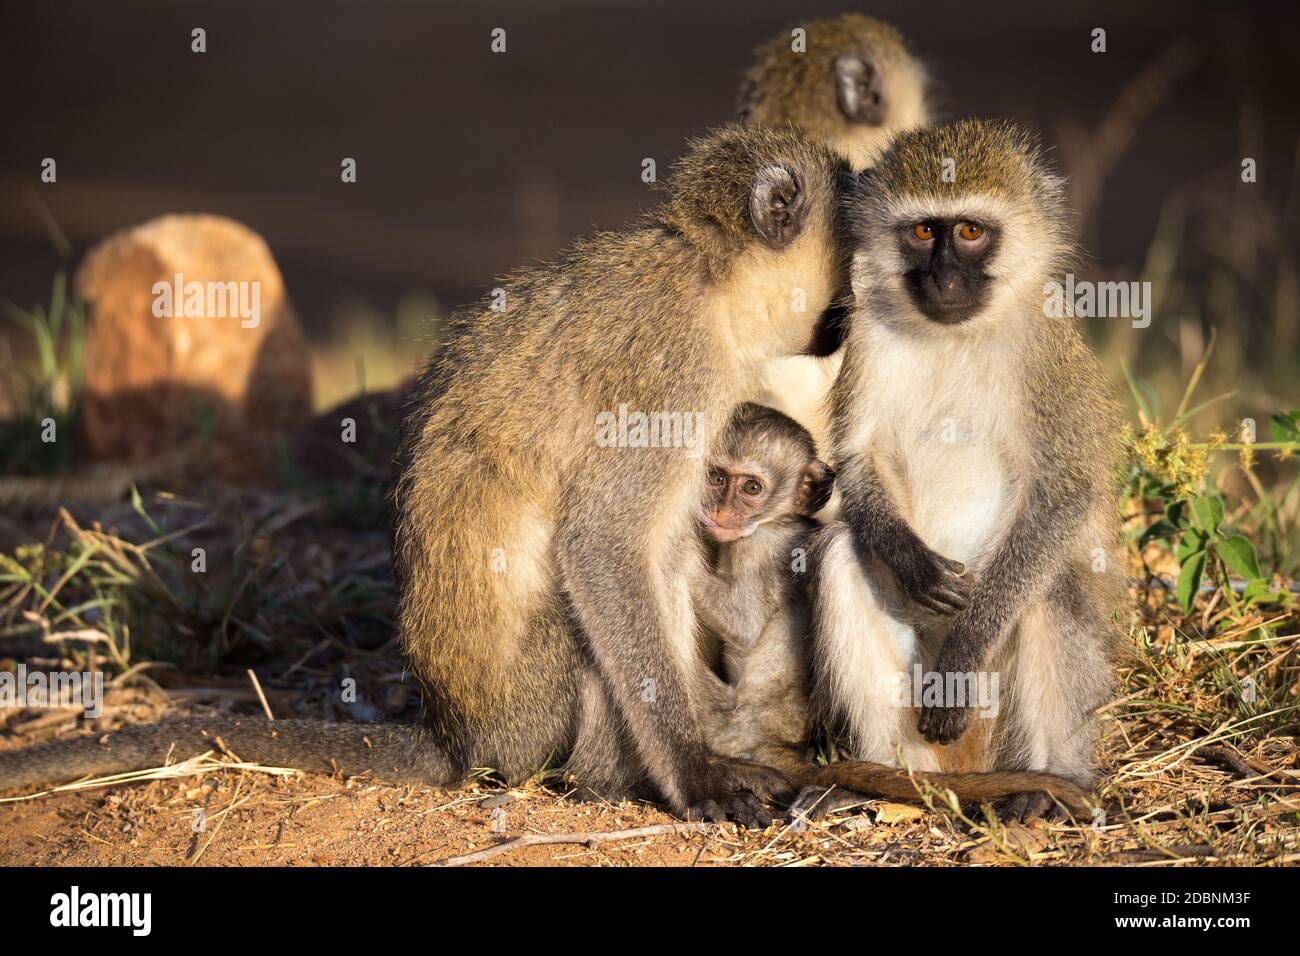 Tres monos con un bebé se sientan juntos Foto de stock